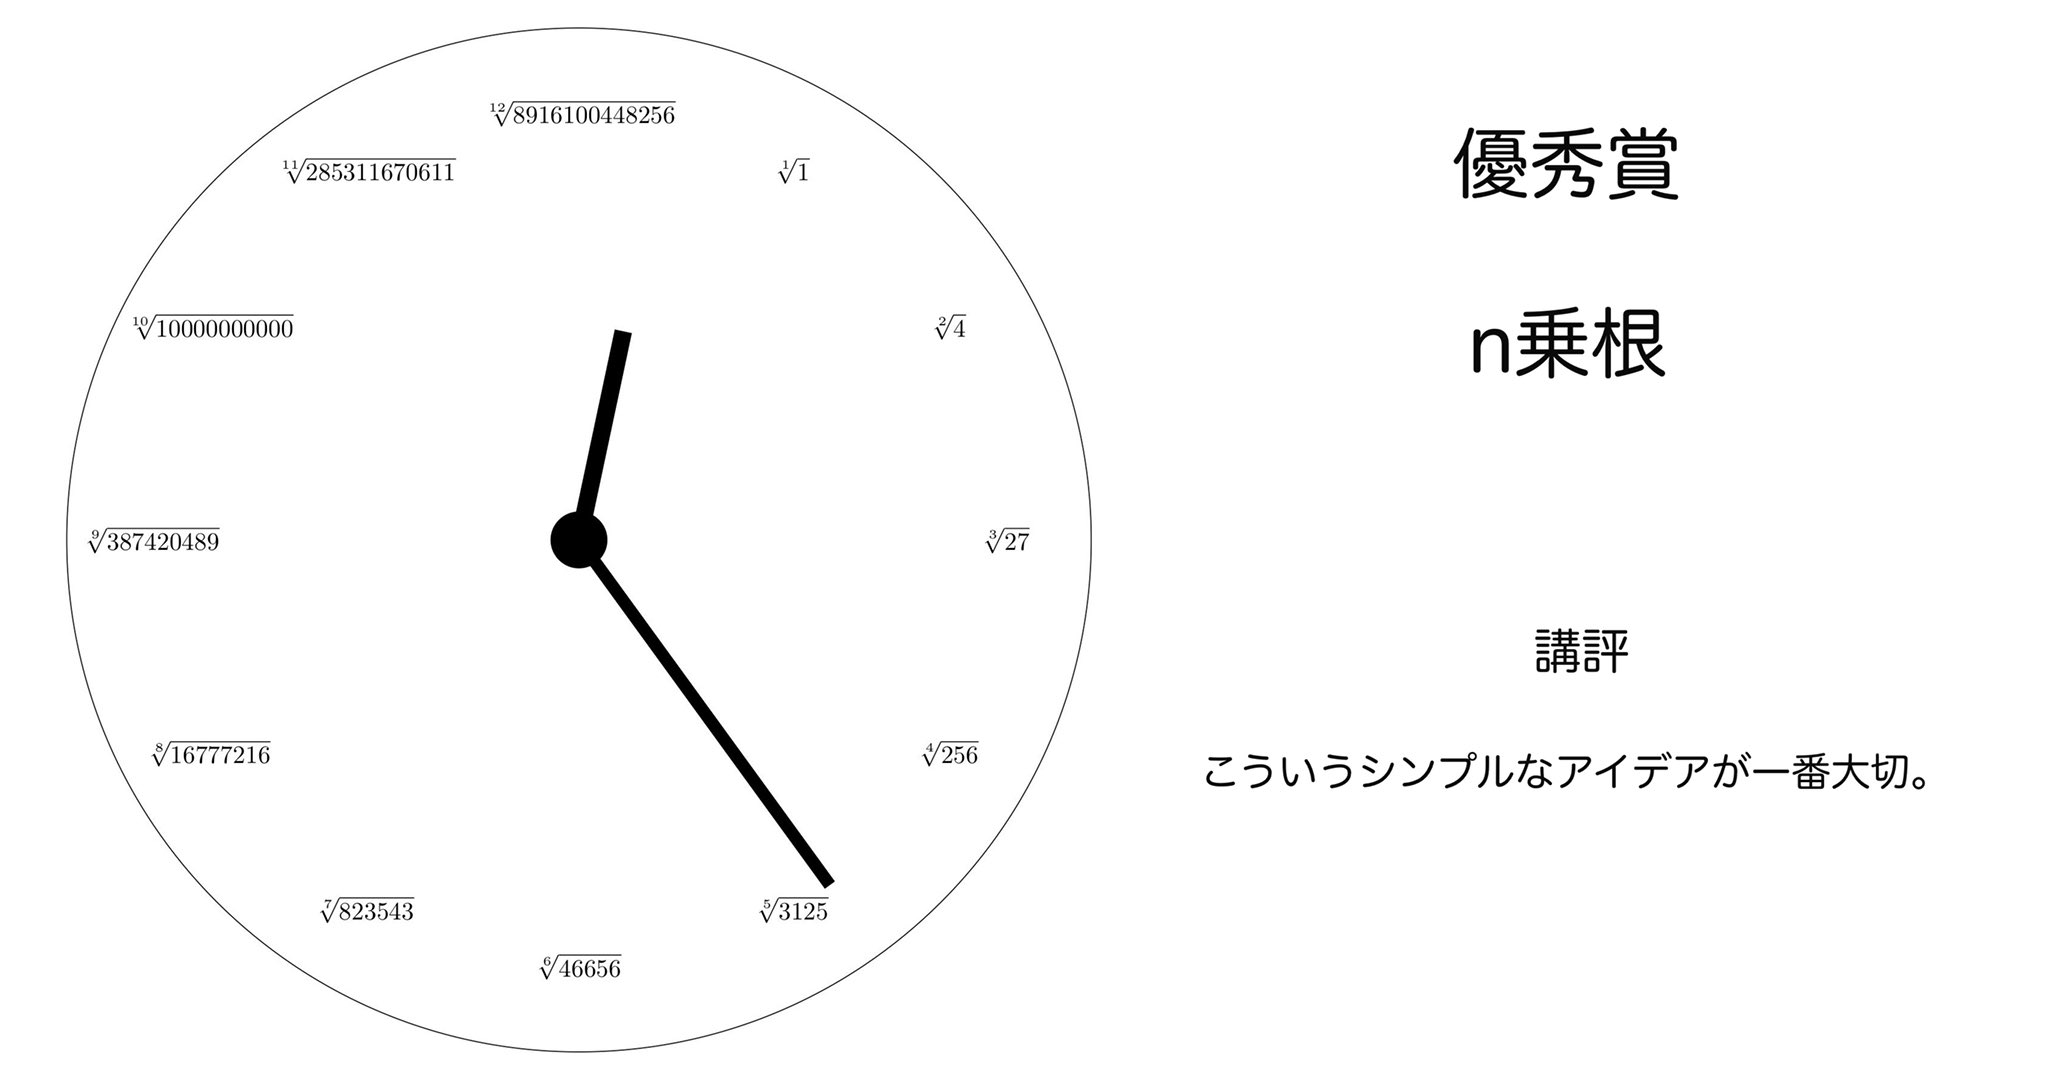 数学をフル活用した時計のデザインがかっこいい!!